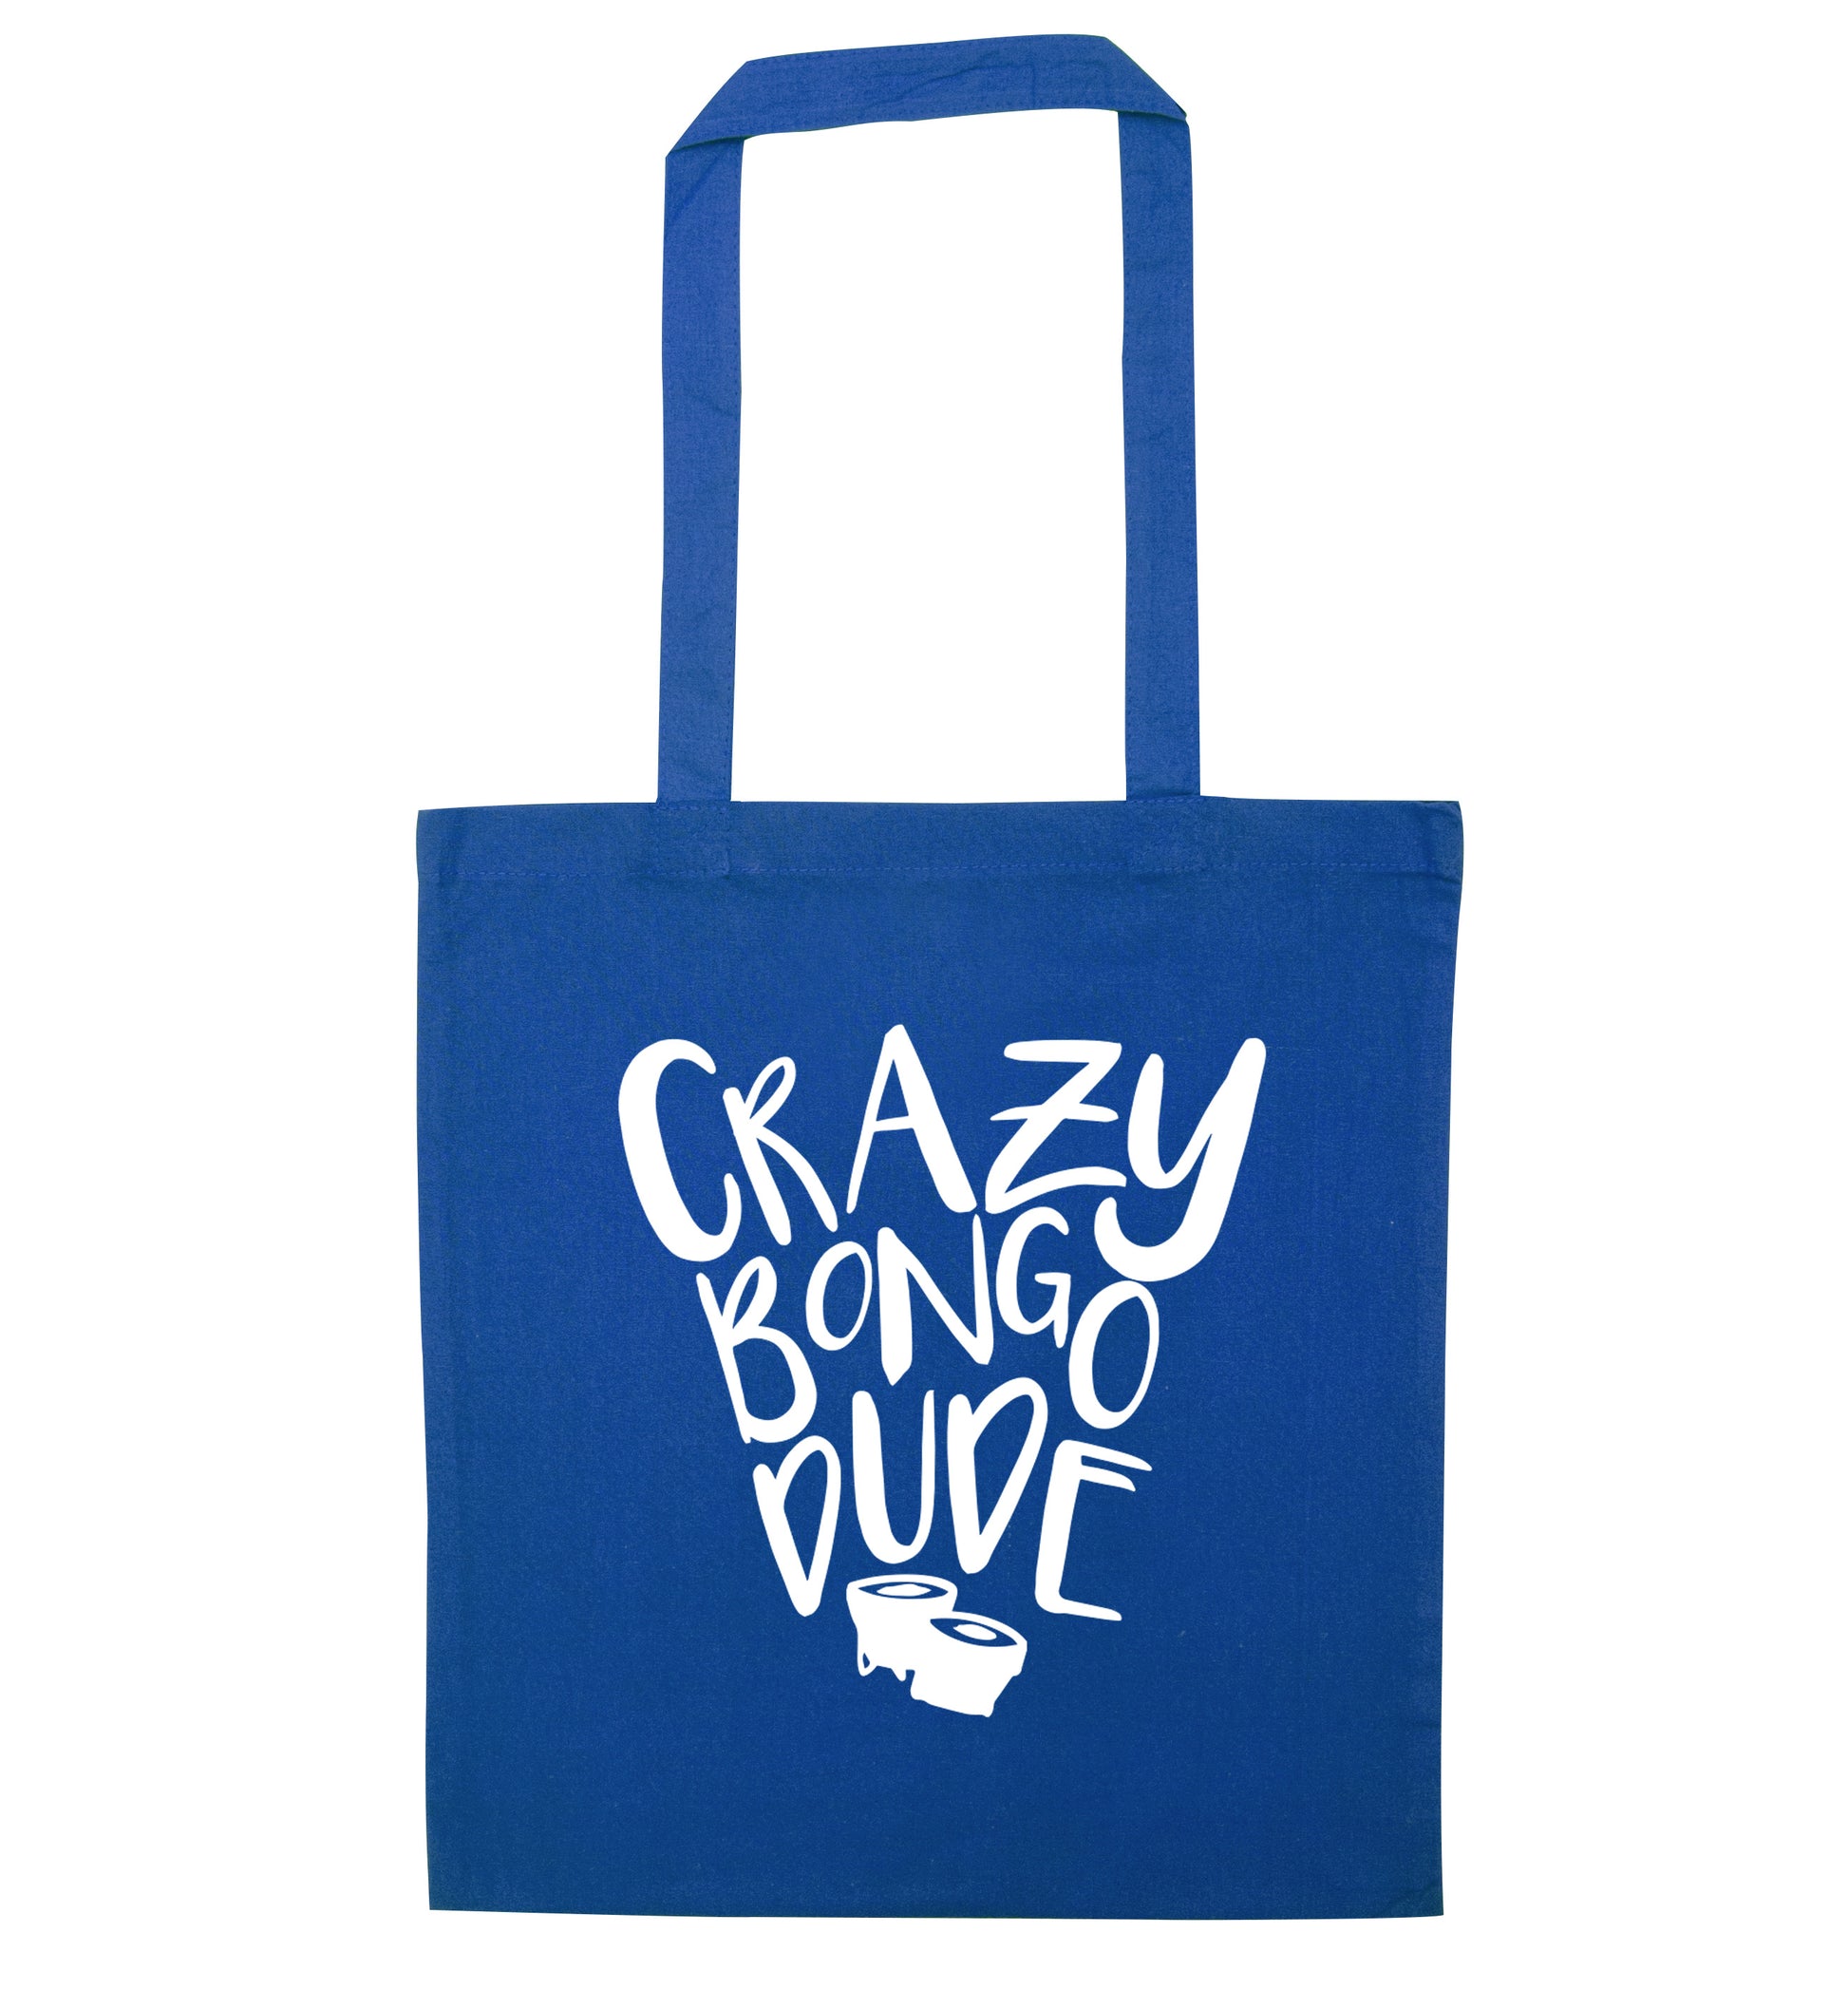 Crazy bongo dude blue tote bag